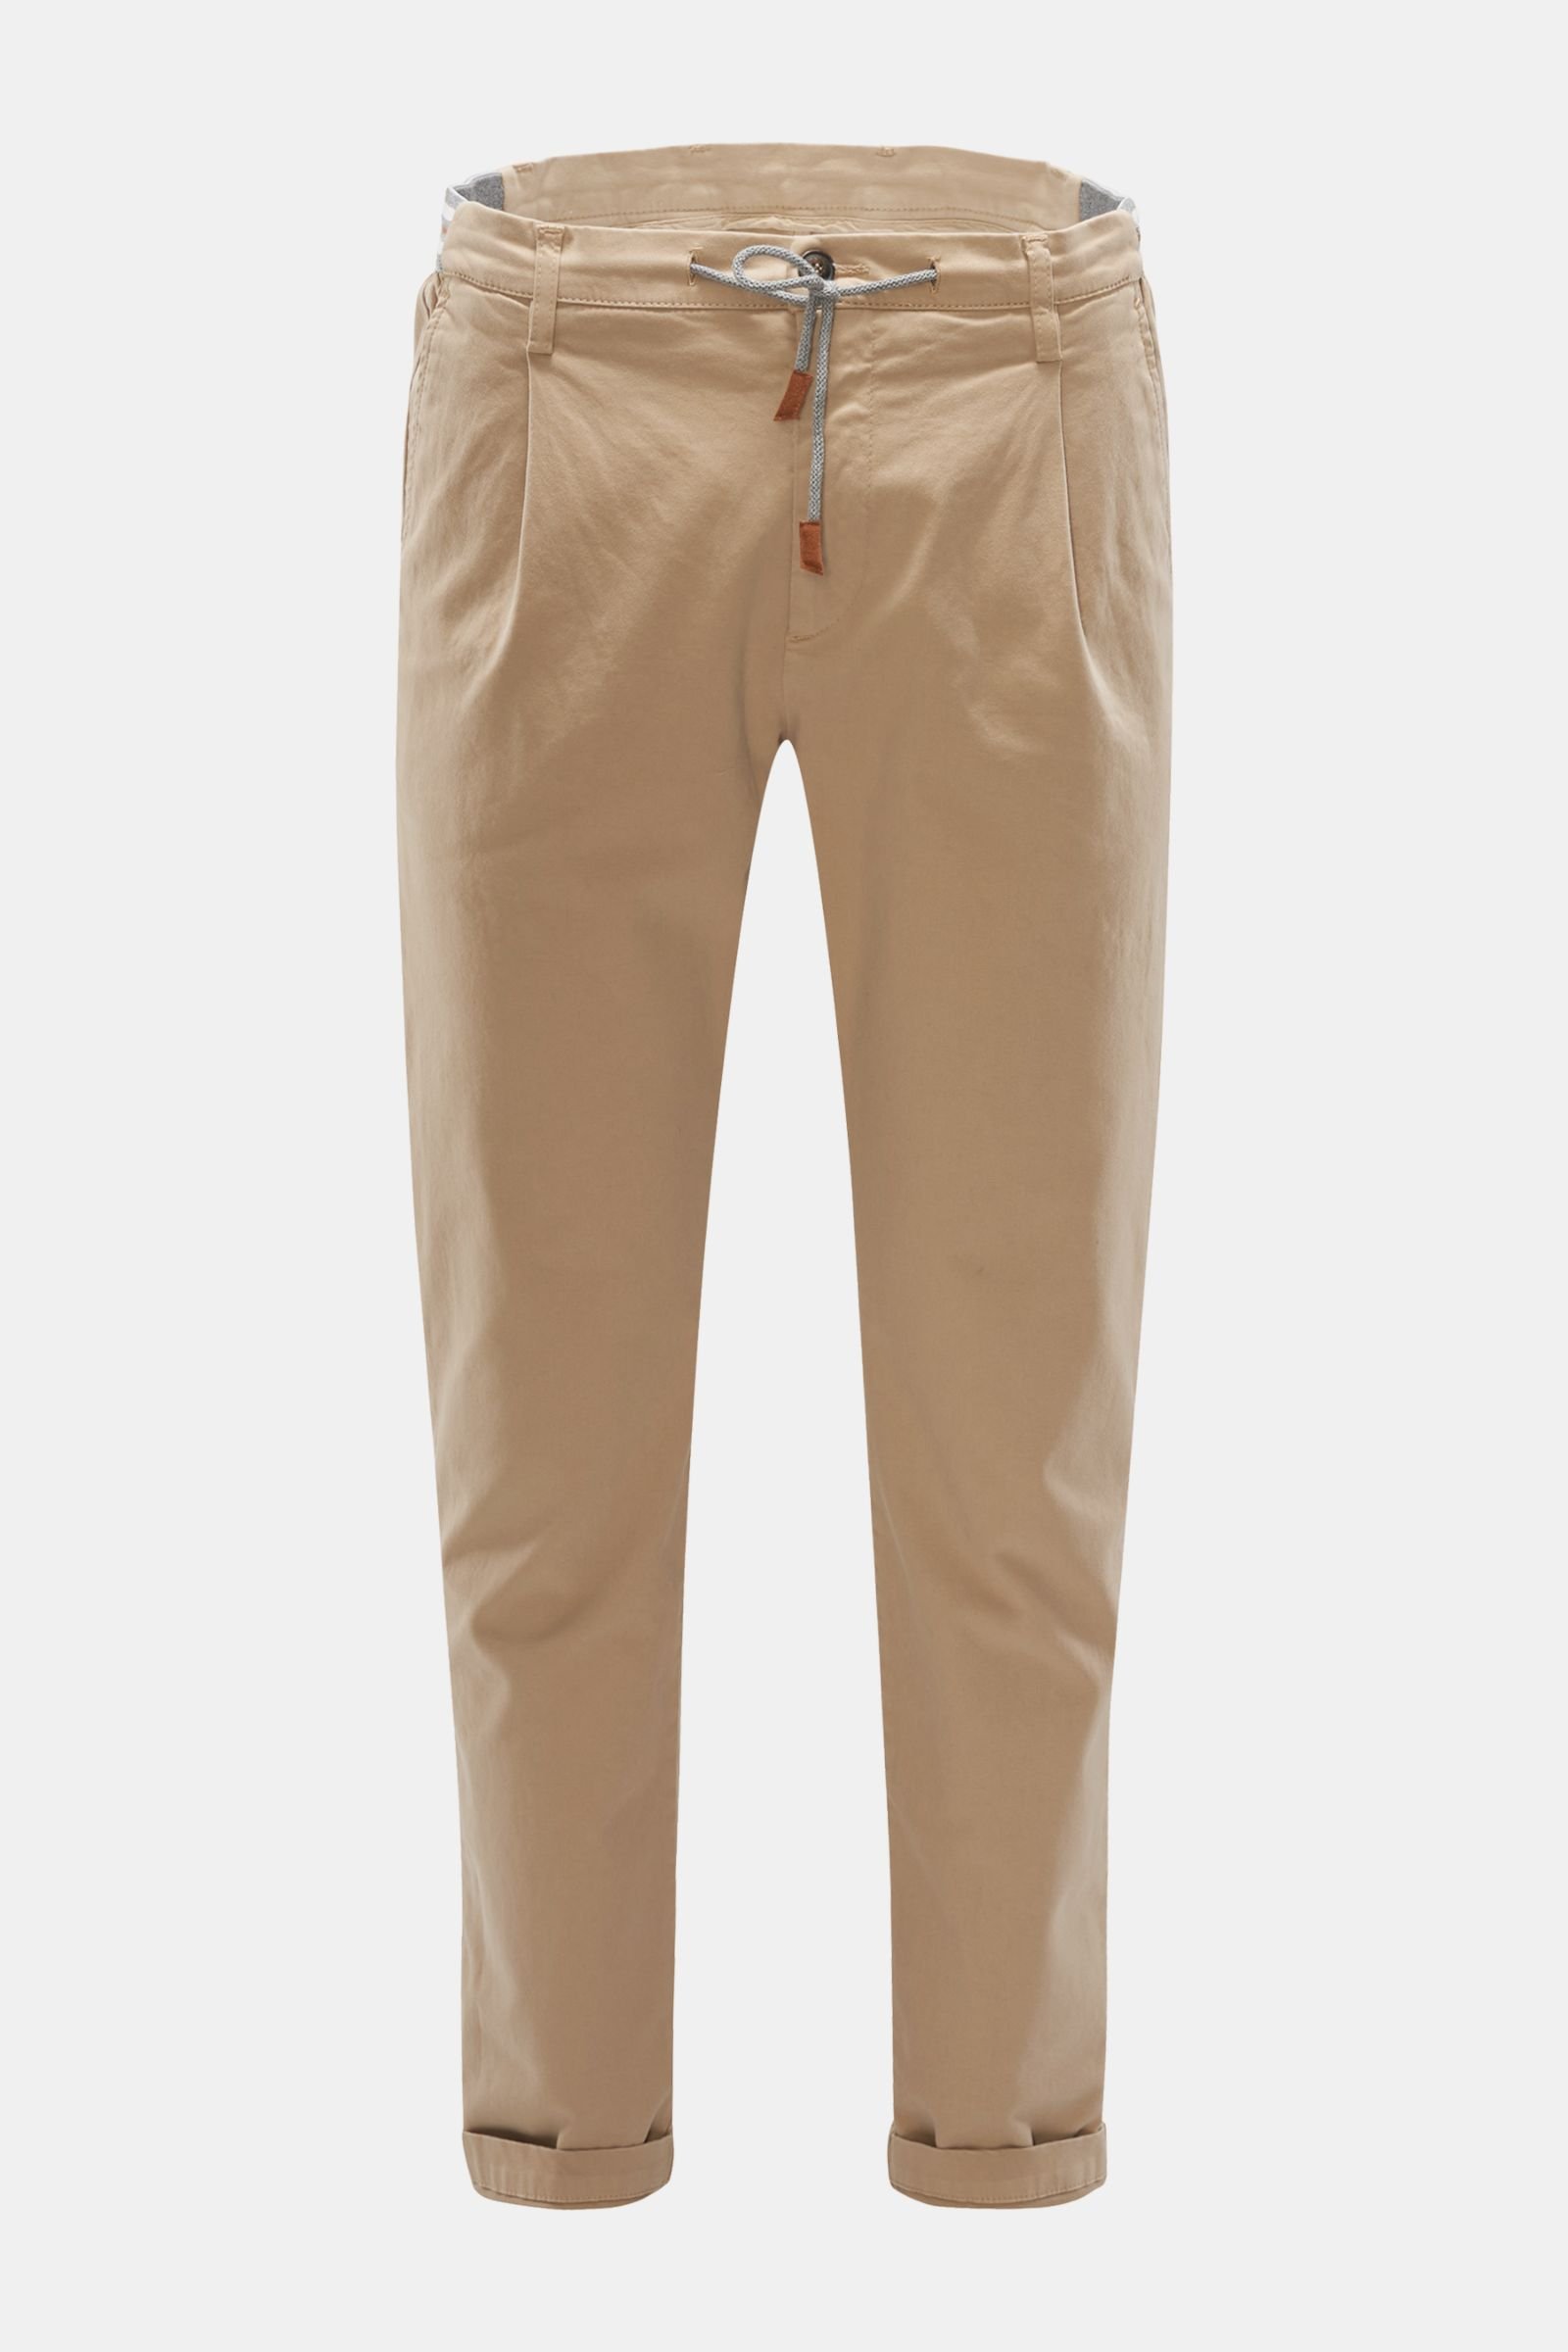 Cotton jogger pants beige